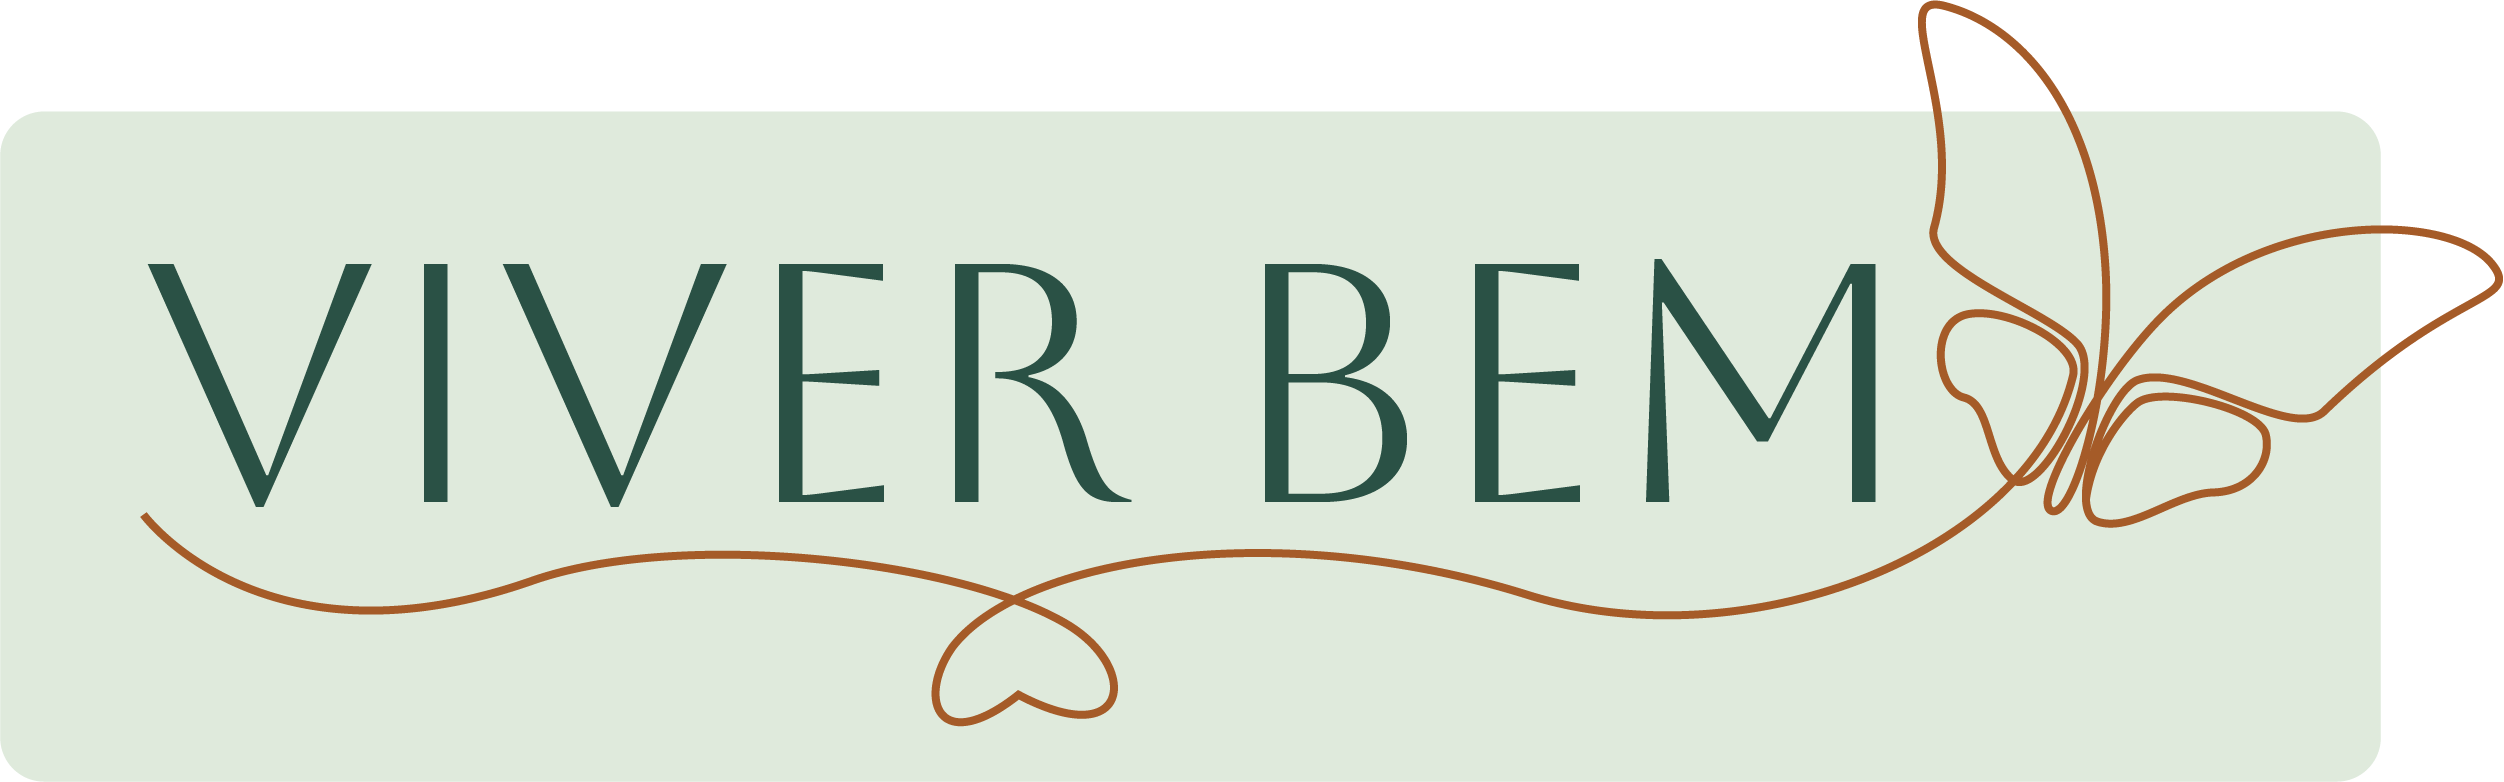 Viver Bem project work logo